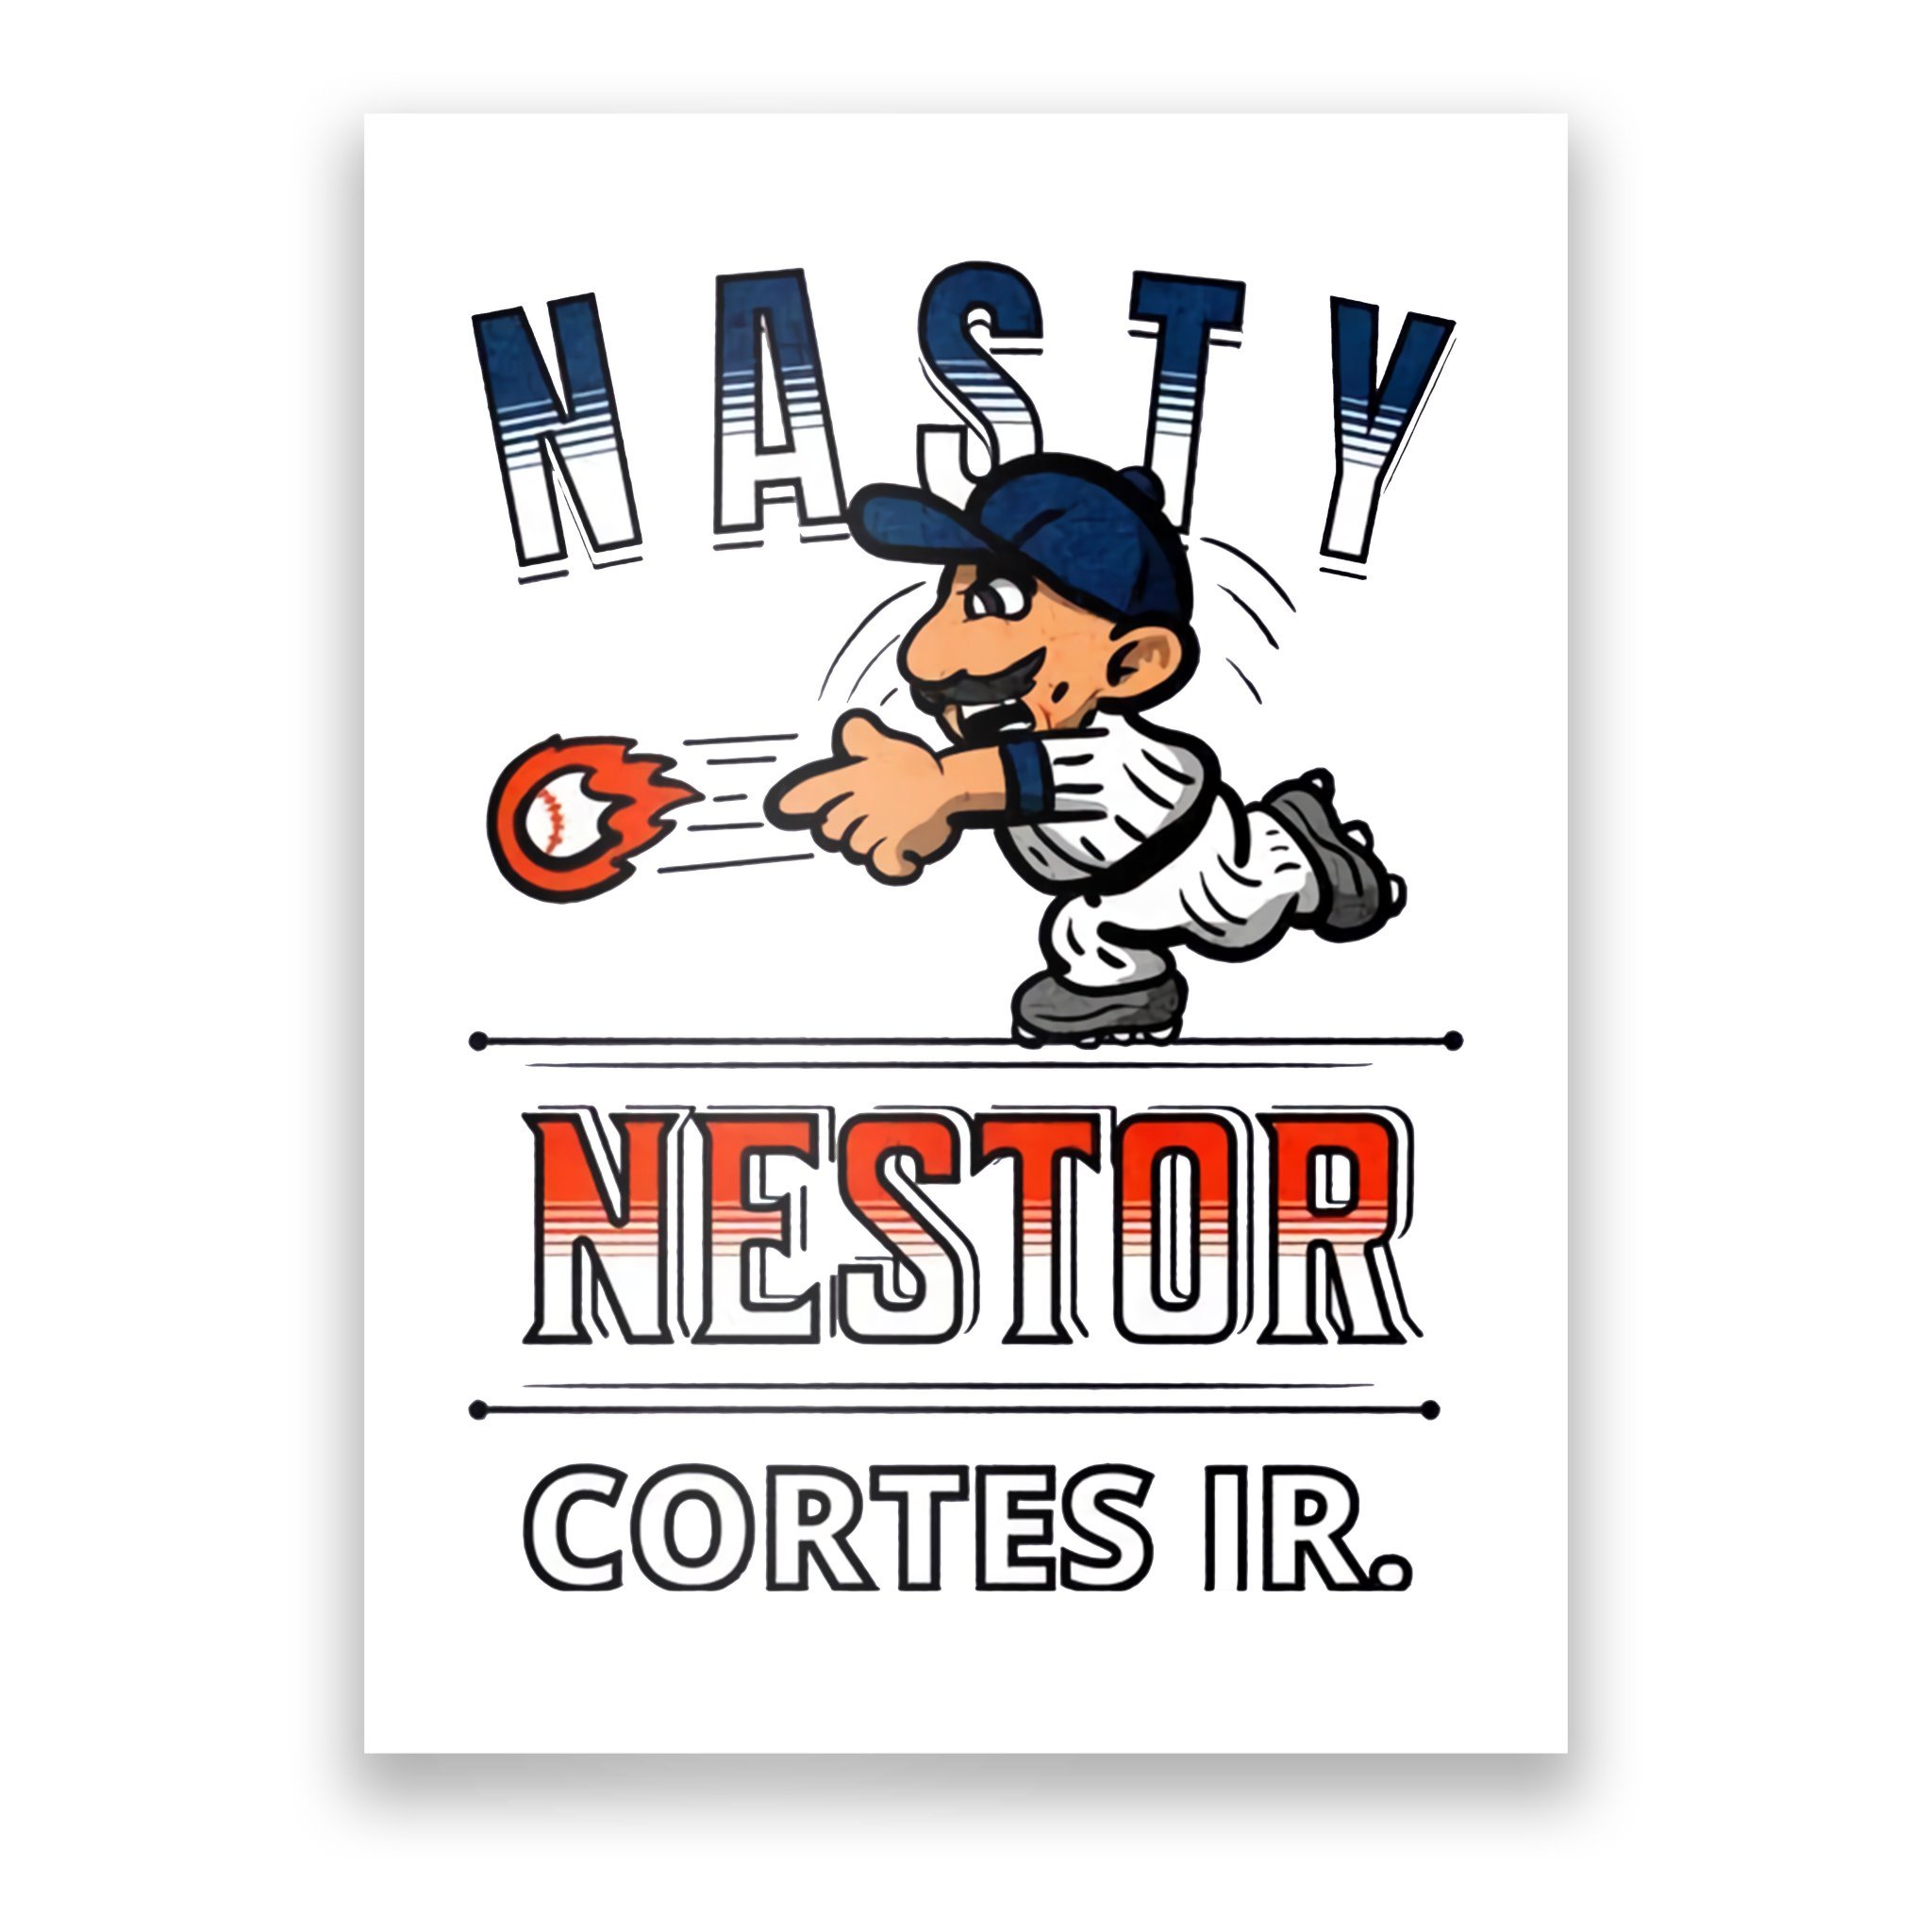 nasty nestor day